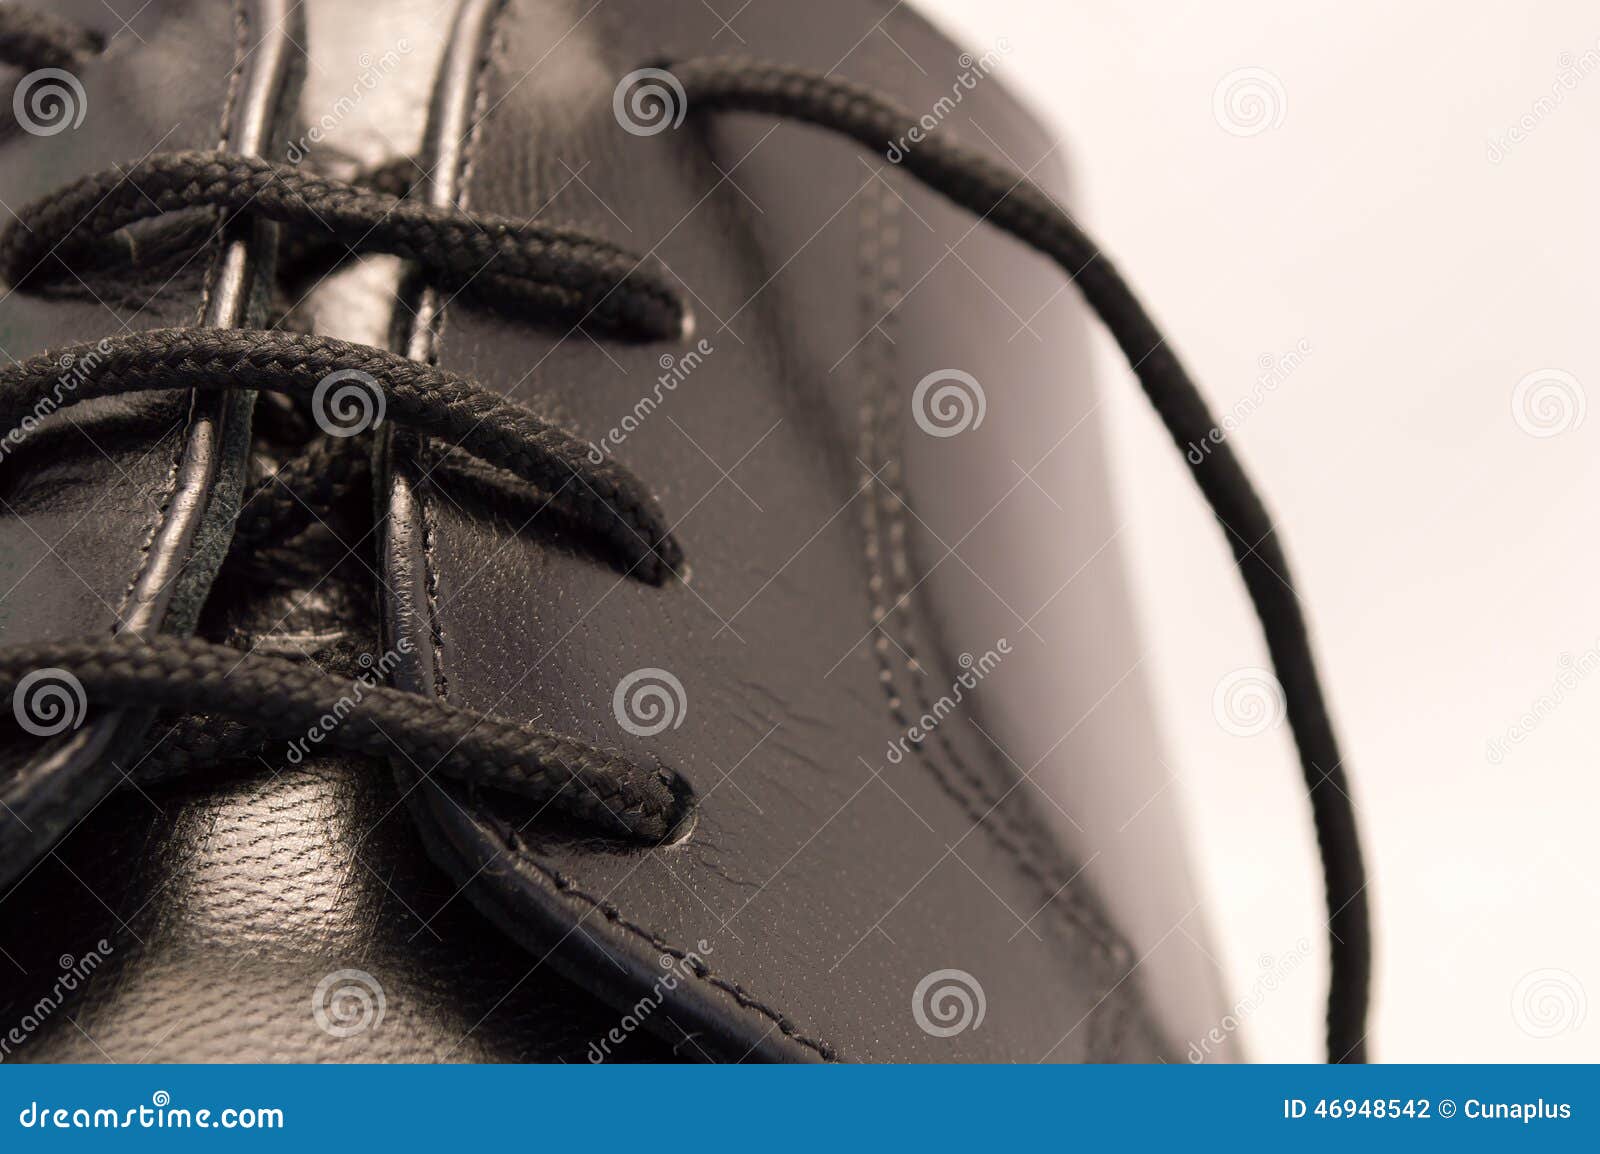 Black leather shoe stock photo. Image of male, elegant - 46948542